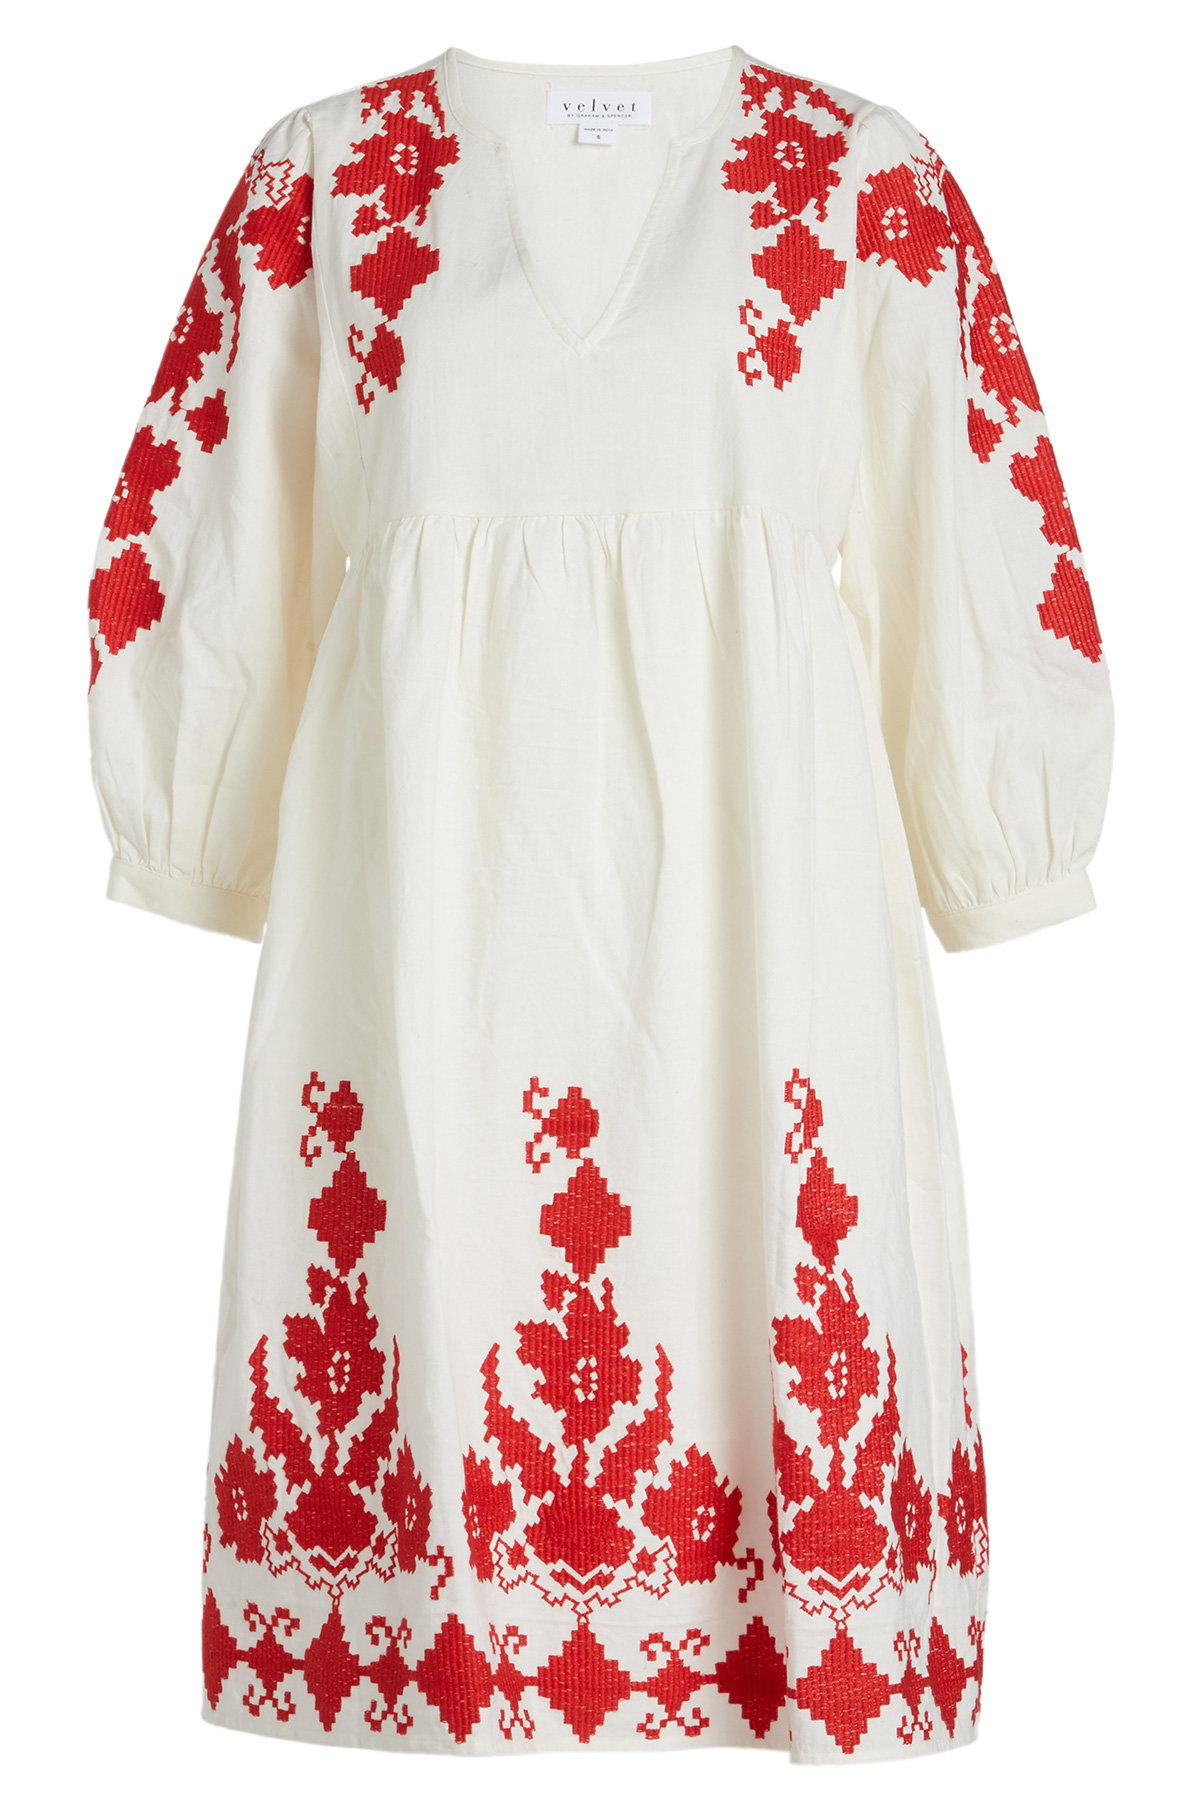 Velvet - Jora Embroidered Cotton Dress